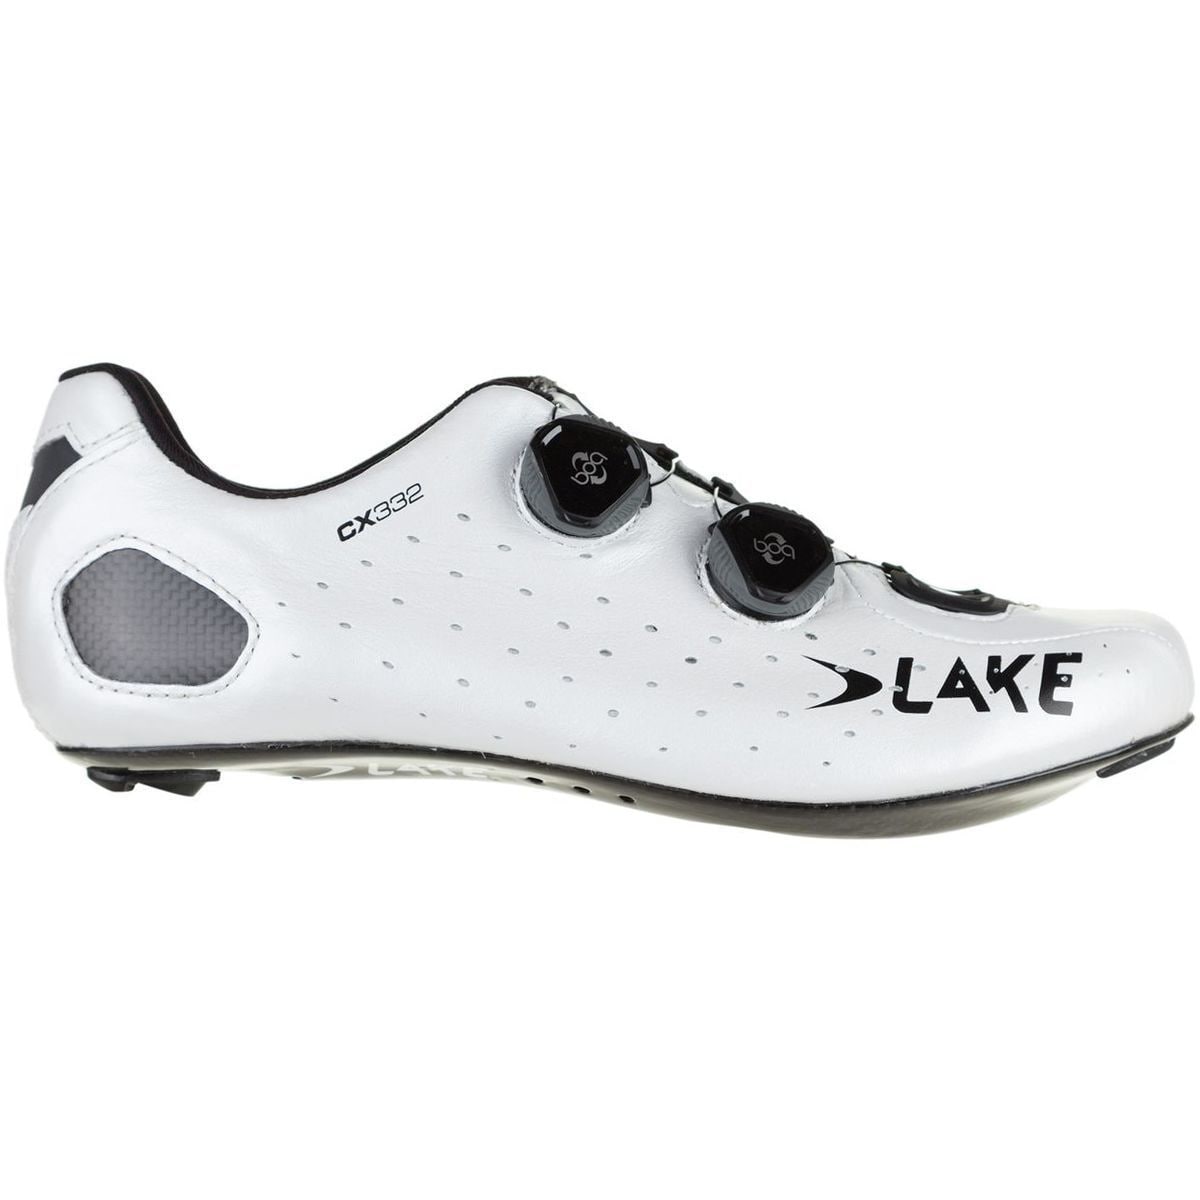 Lake CX332 L6 Boa Cycling Shoe - Men's